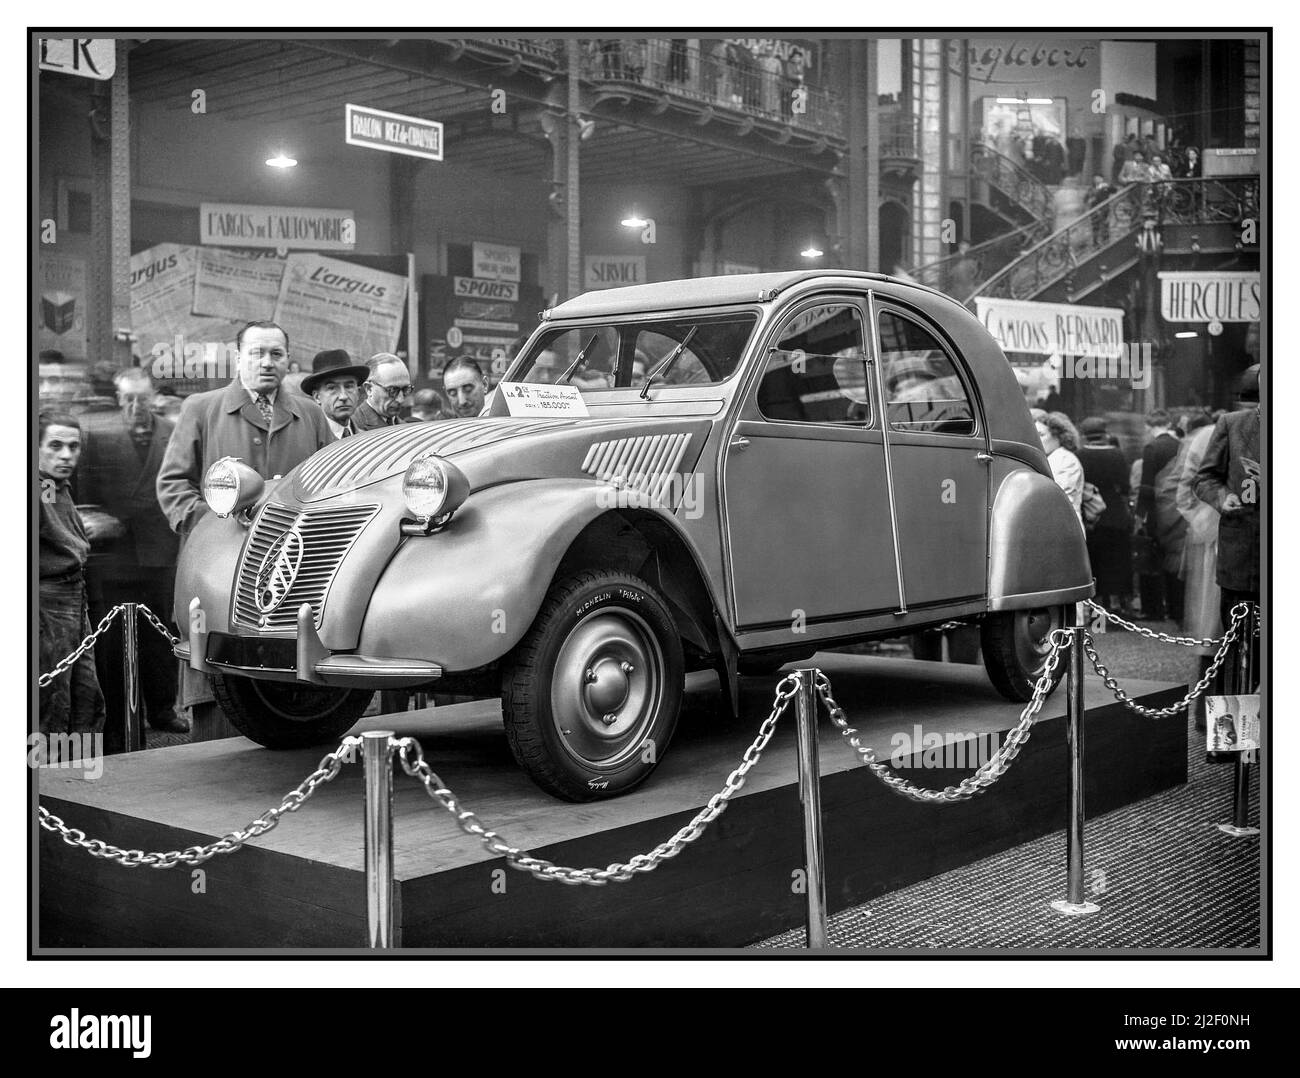 Lancement du Citroen 2CV 1949 au salon de l'automobile de Paris France à un prix de 185 000 Frs avec des pneus Michelin Pilote. Après la guerre lancement français de la révolutionnaire Citroën traction avant deux chevaux car, qui a par la suite atteint un statut emblématique dans le monde entier Banque D'Images